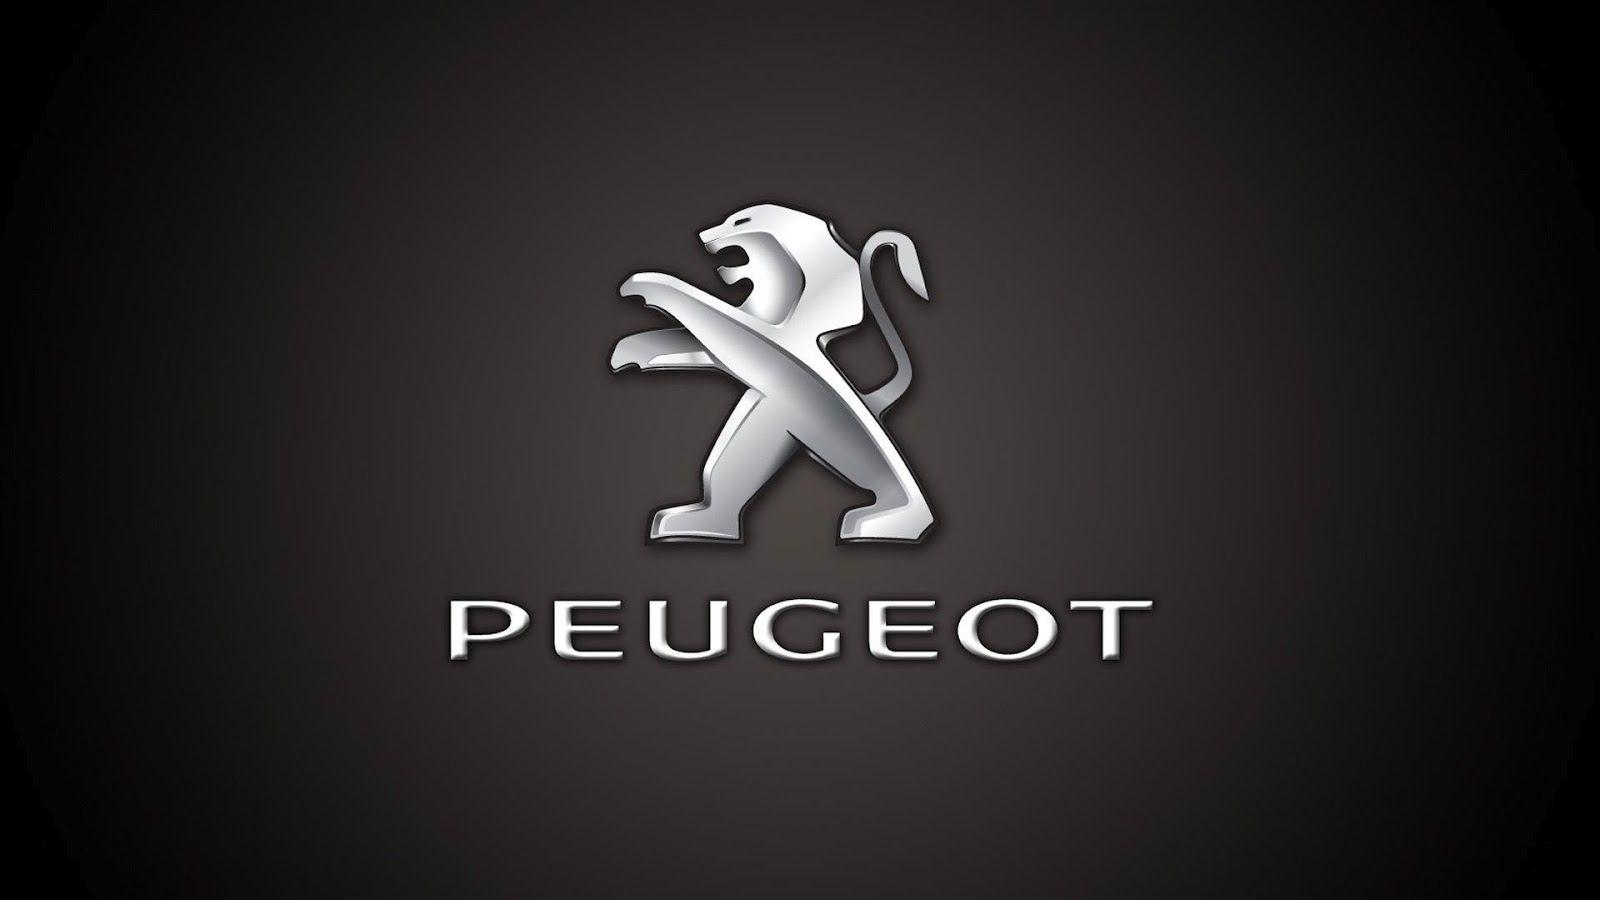 Peugeot Car Logo Wallpaper Widescreen Wallpaper. WallscreenHD